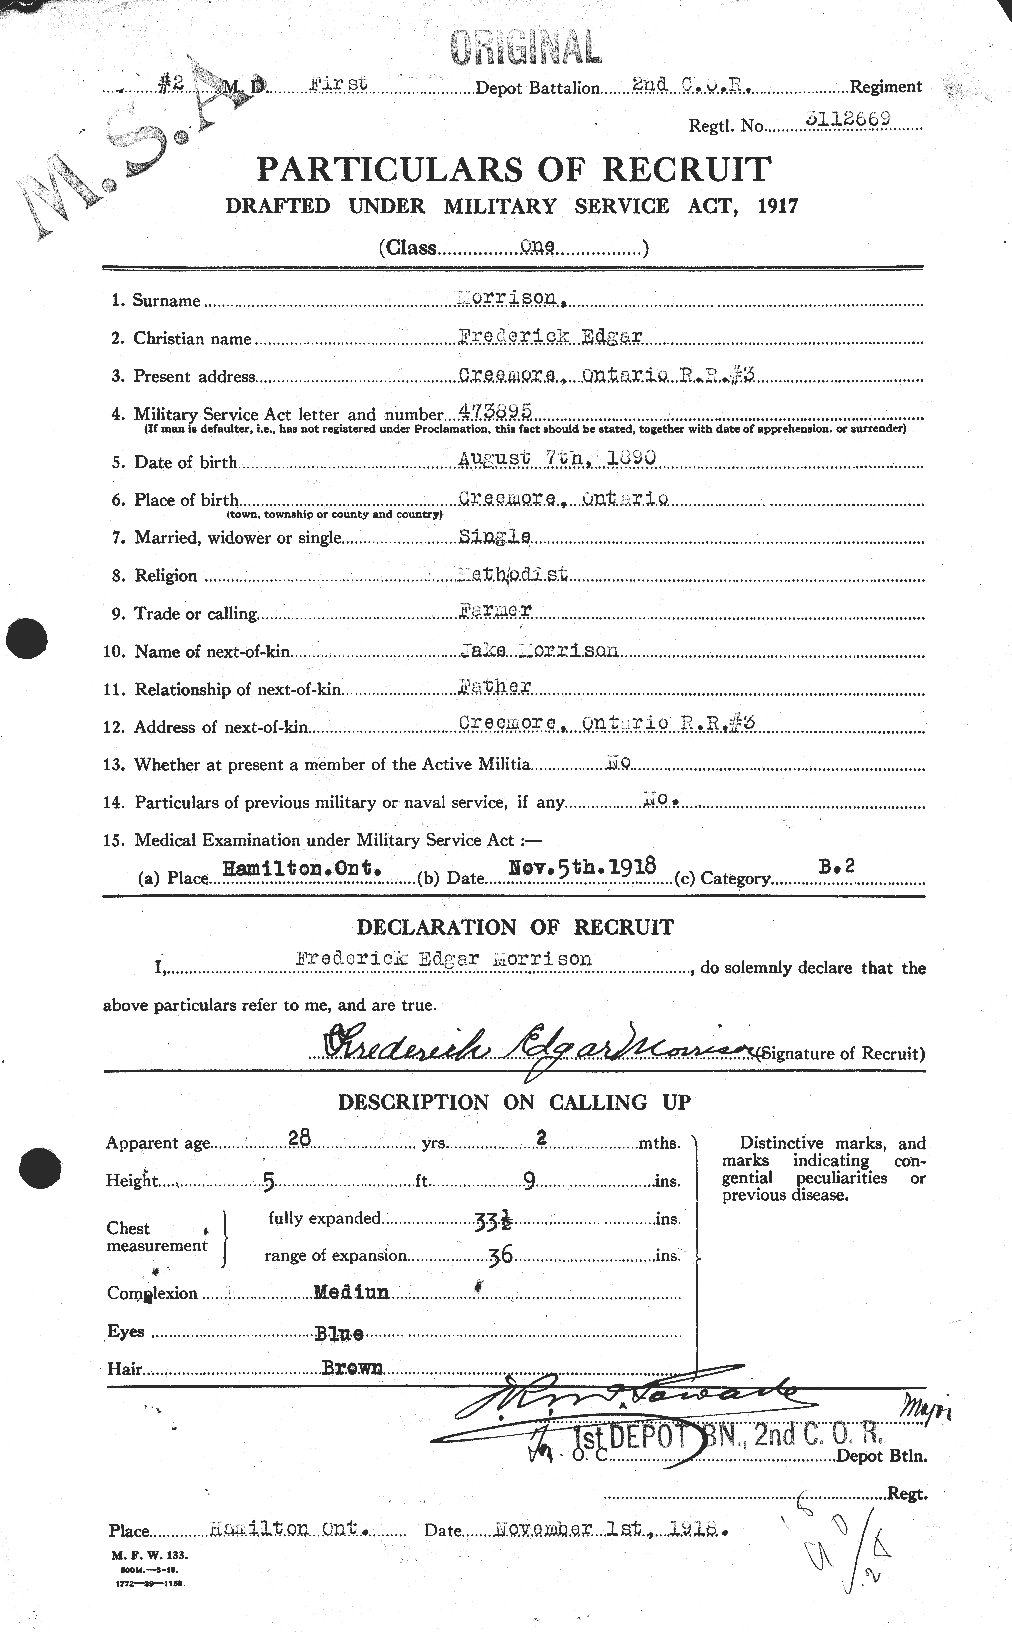 Dossiers du Personnel de la Première Guerre mondiale - CEC 506770a